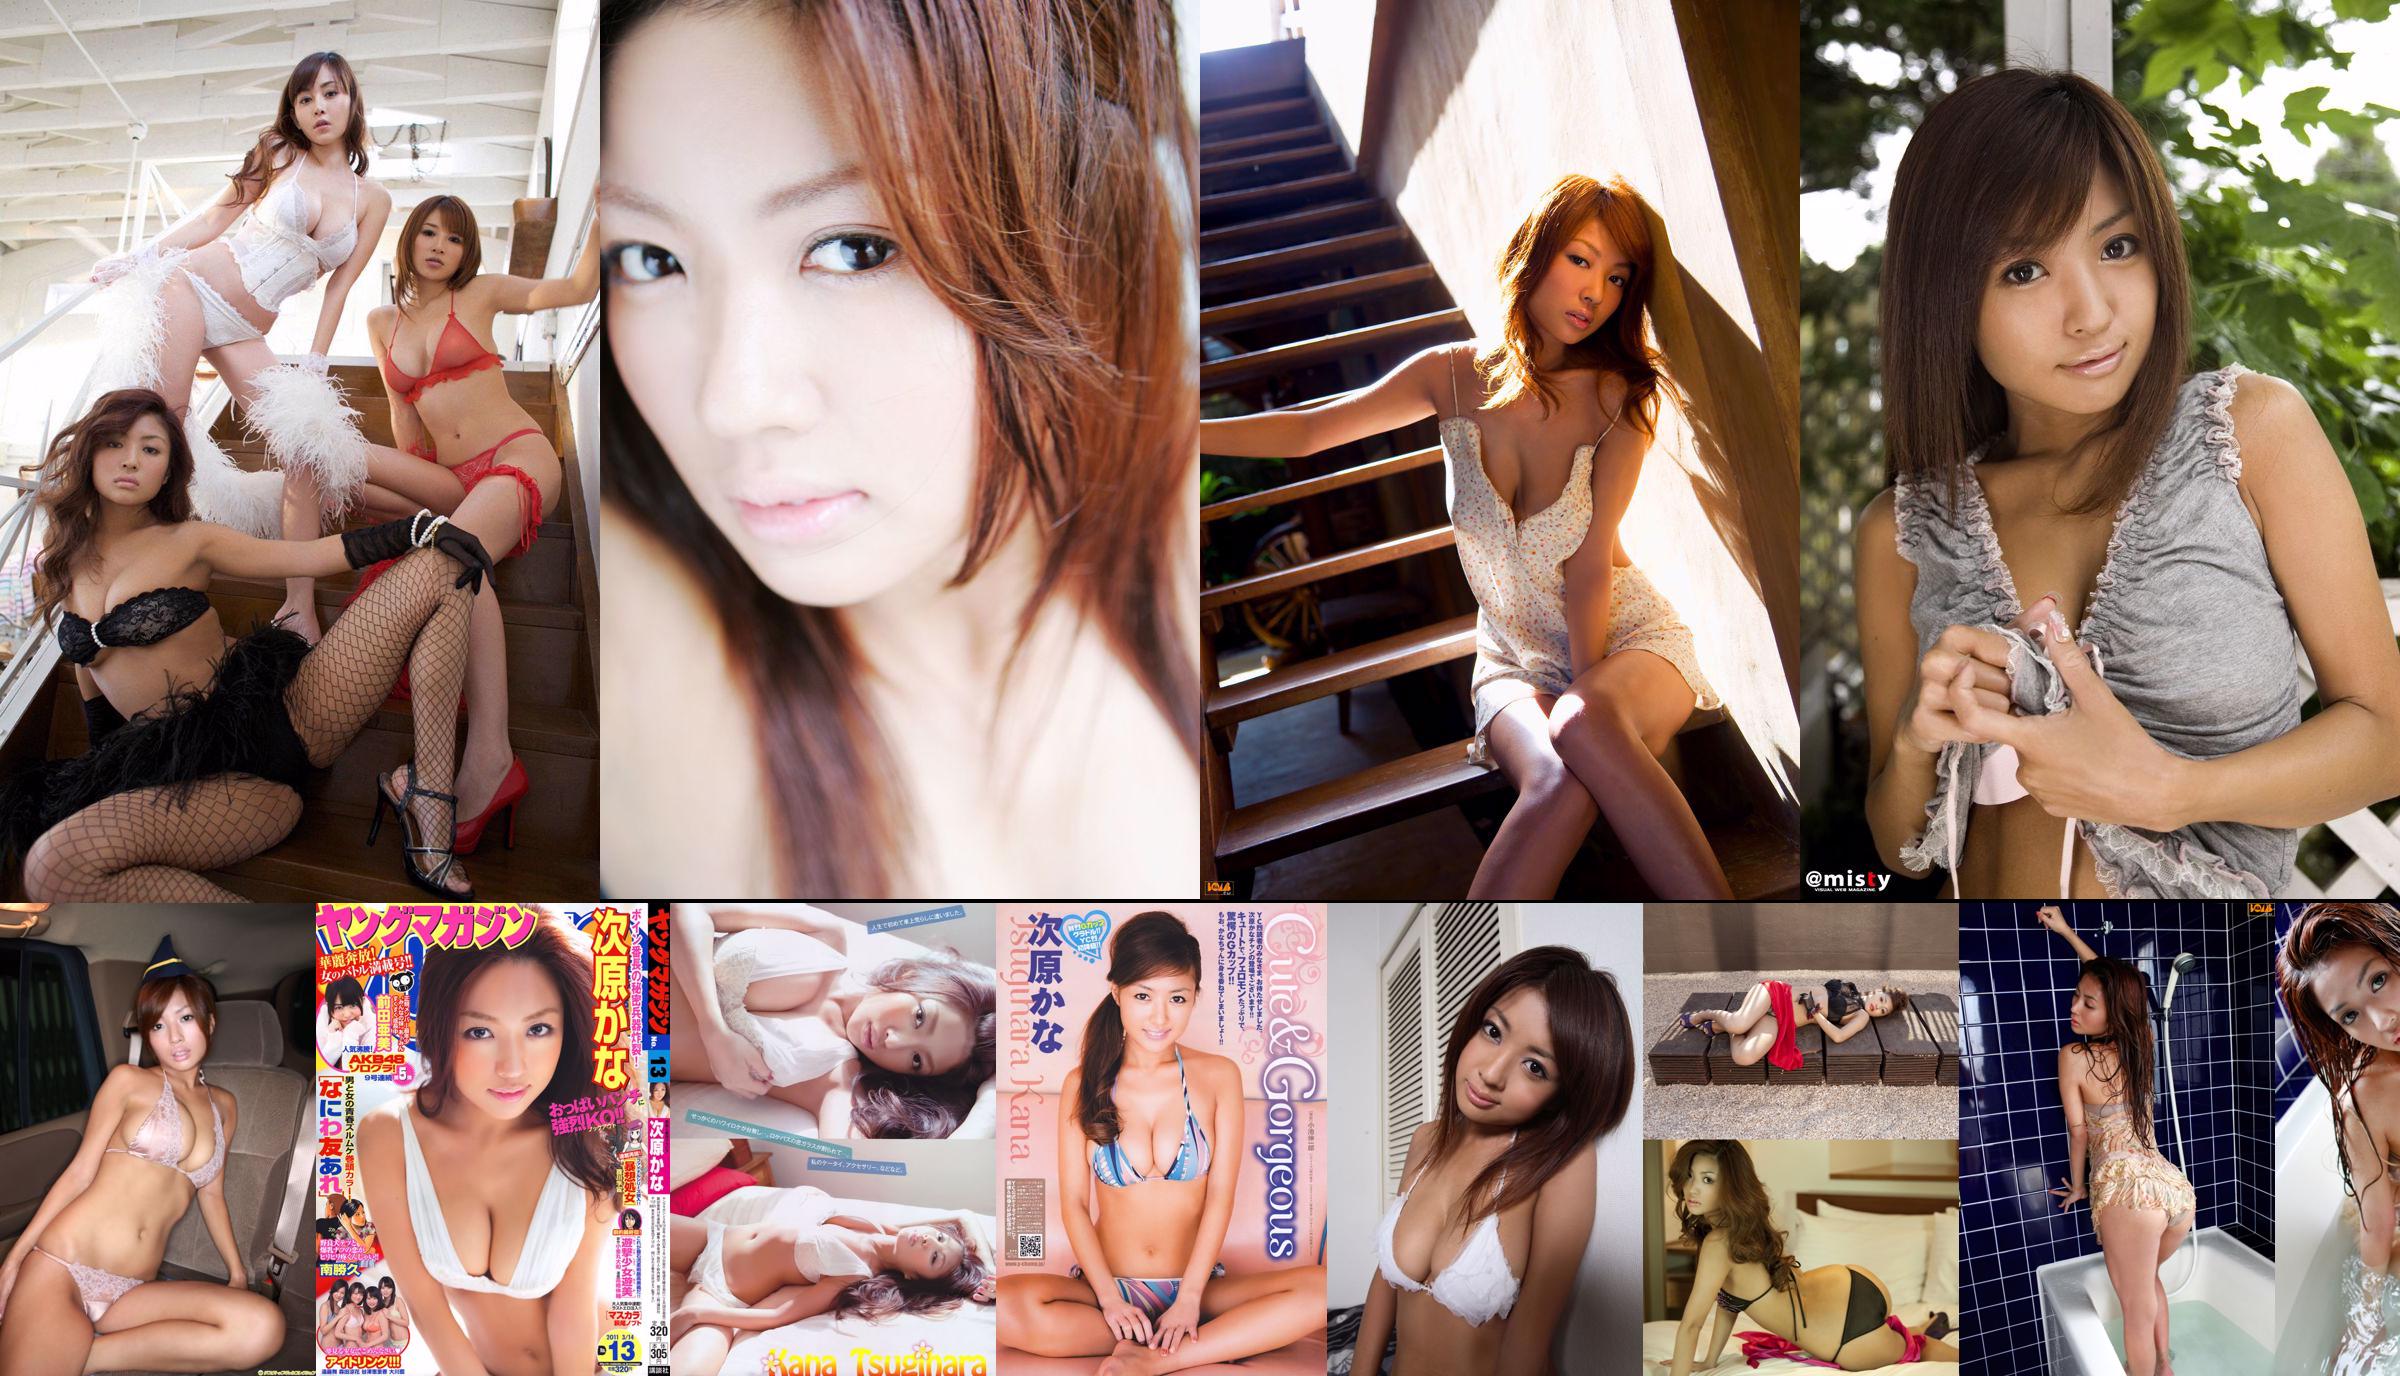 [Girlz-High] Koharu Nishino Koharu Nishino - Lace Girl - bkoh_009_001 No.10ca2f Page 2